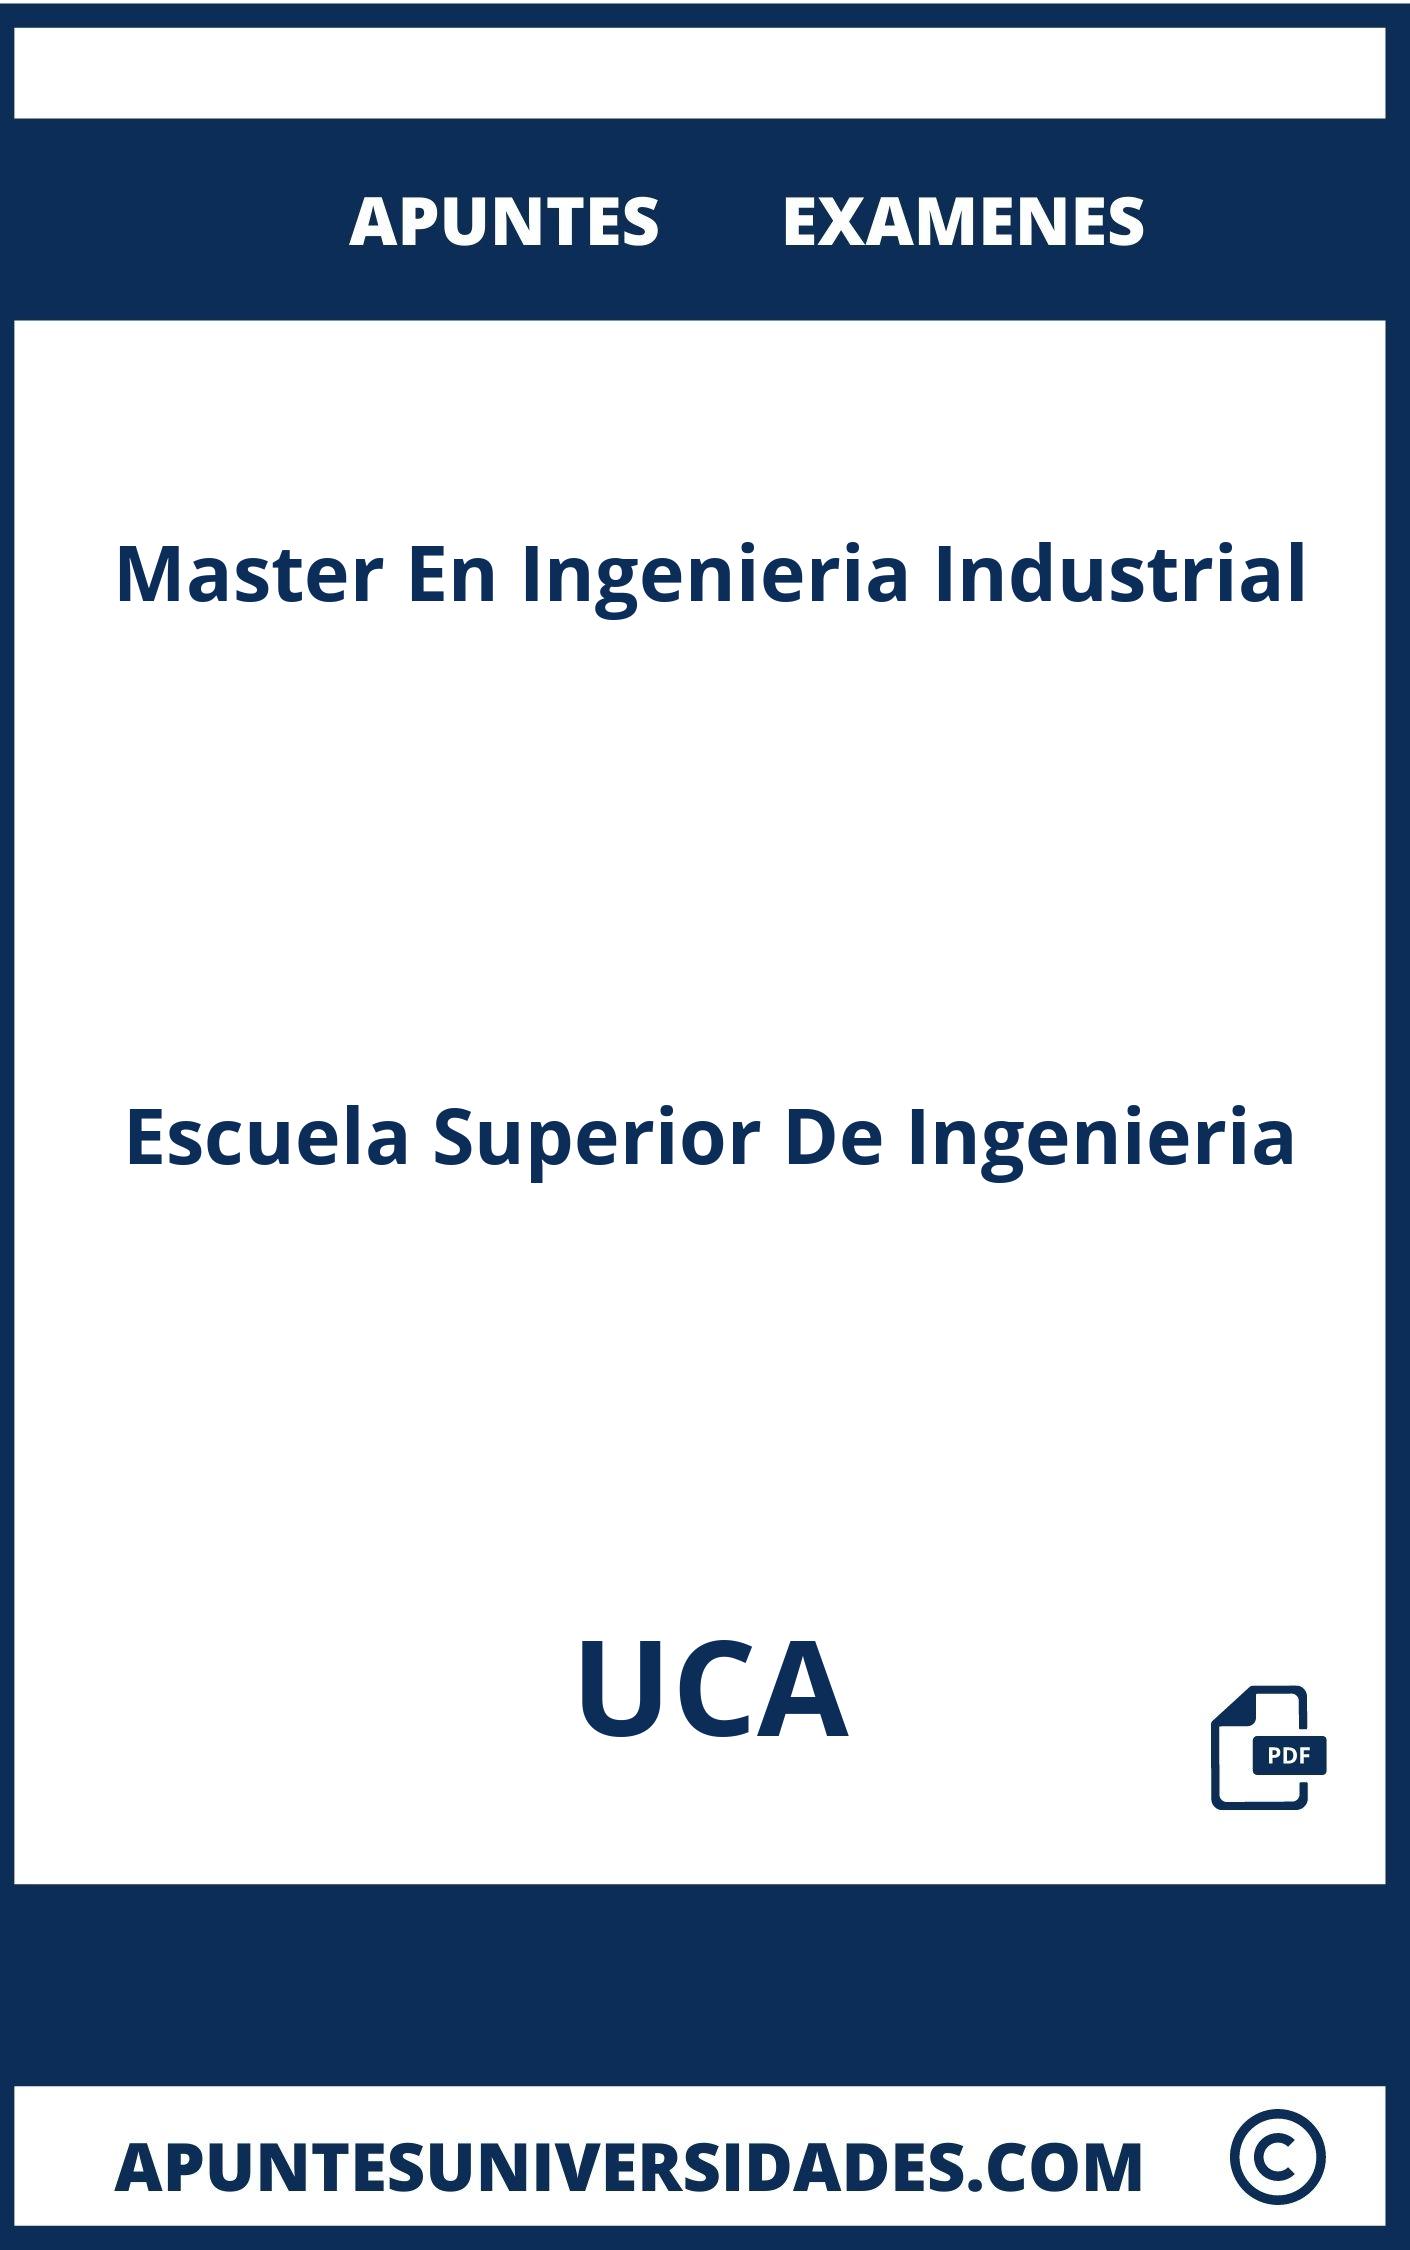 Apuntes y Examenes de Master En Ingenieria Industrial UCA